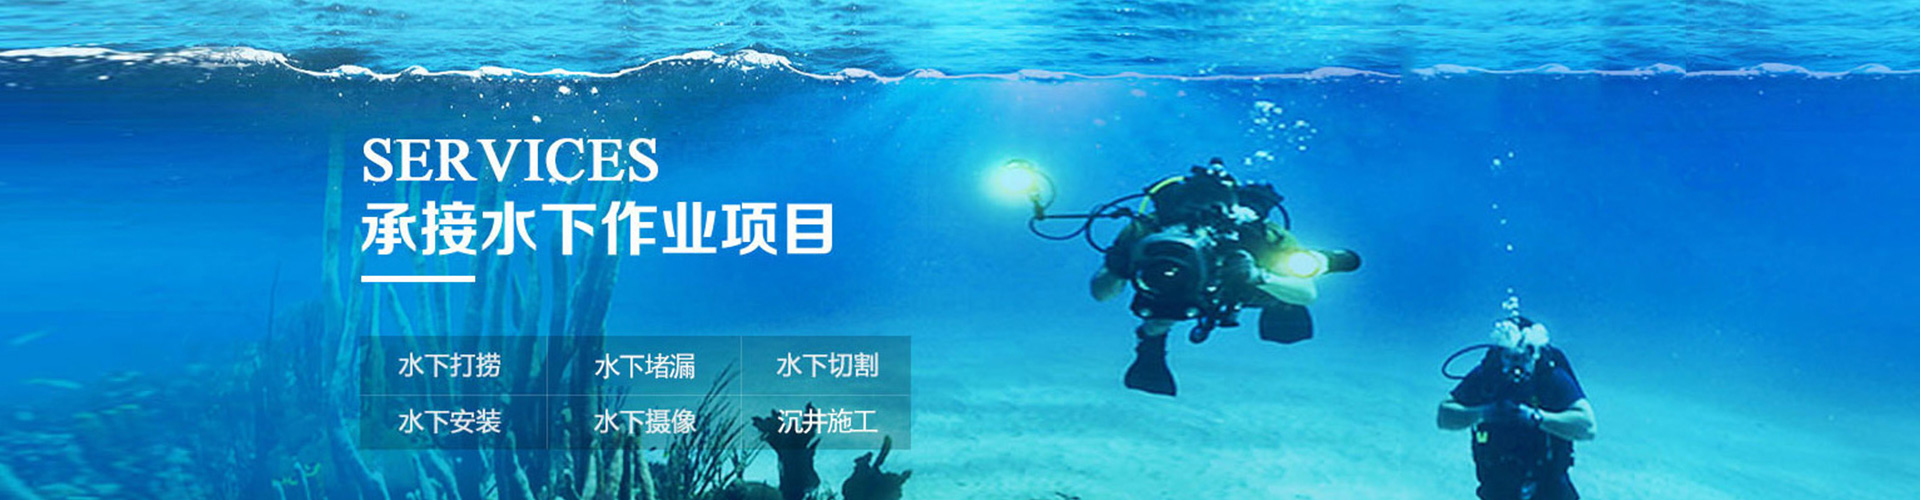 水下摄像服务、萍乡本地水下摄像服务、萍乡、萍乡水下摄像服务